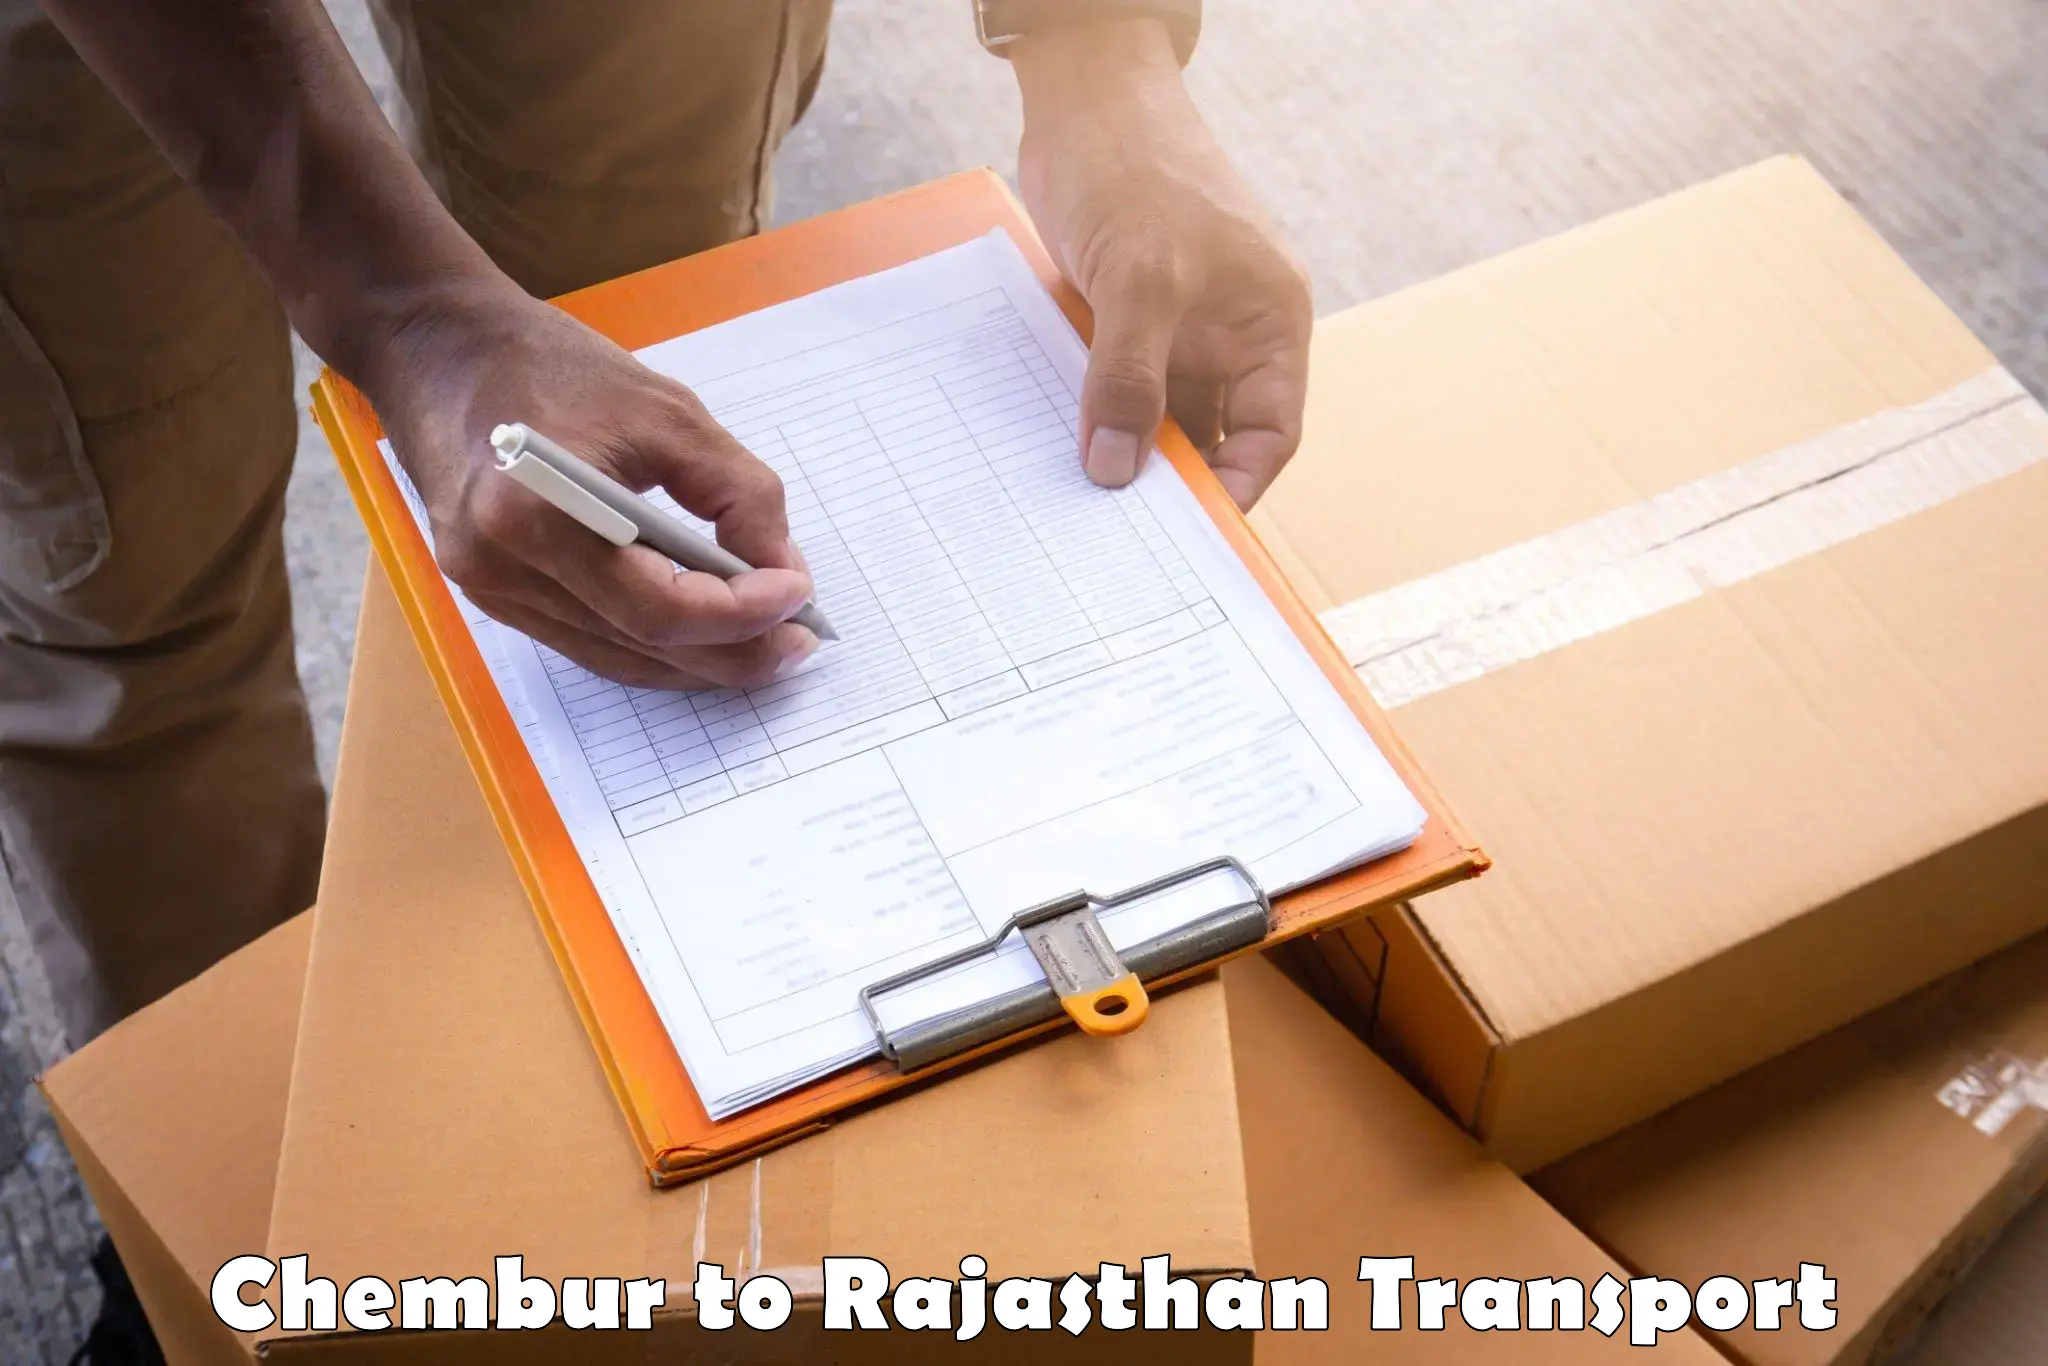 Truck transport companies in India Chembur to Kumbhalgarh